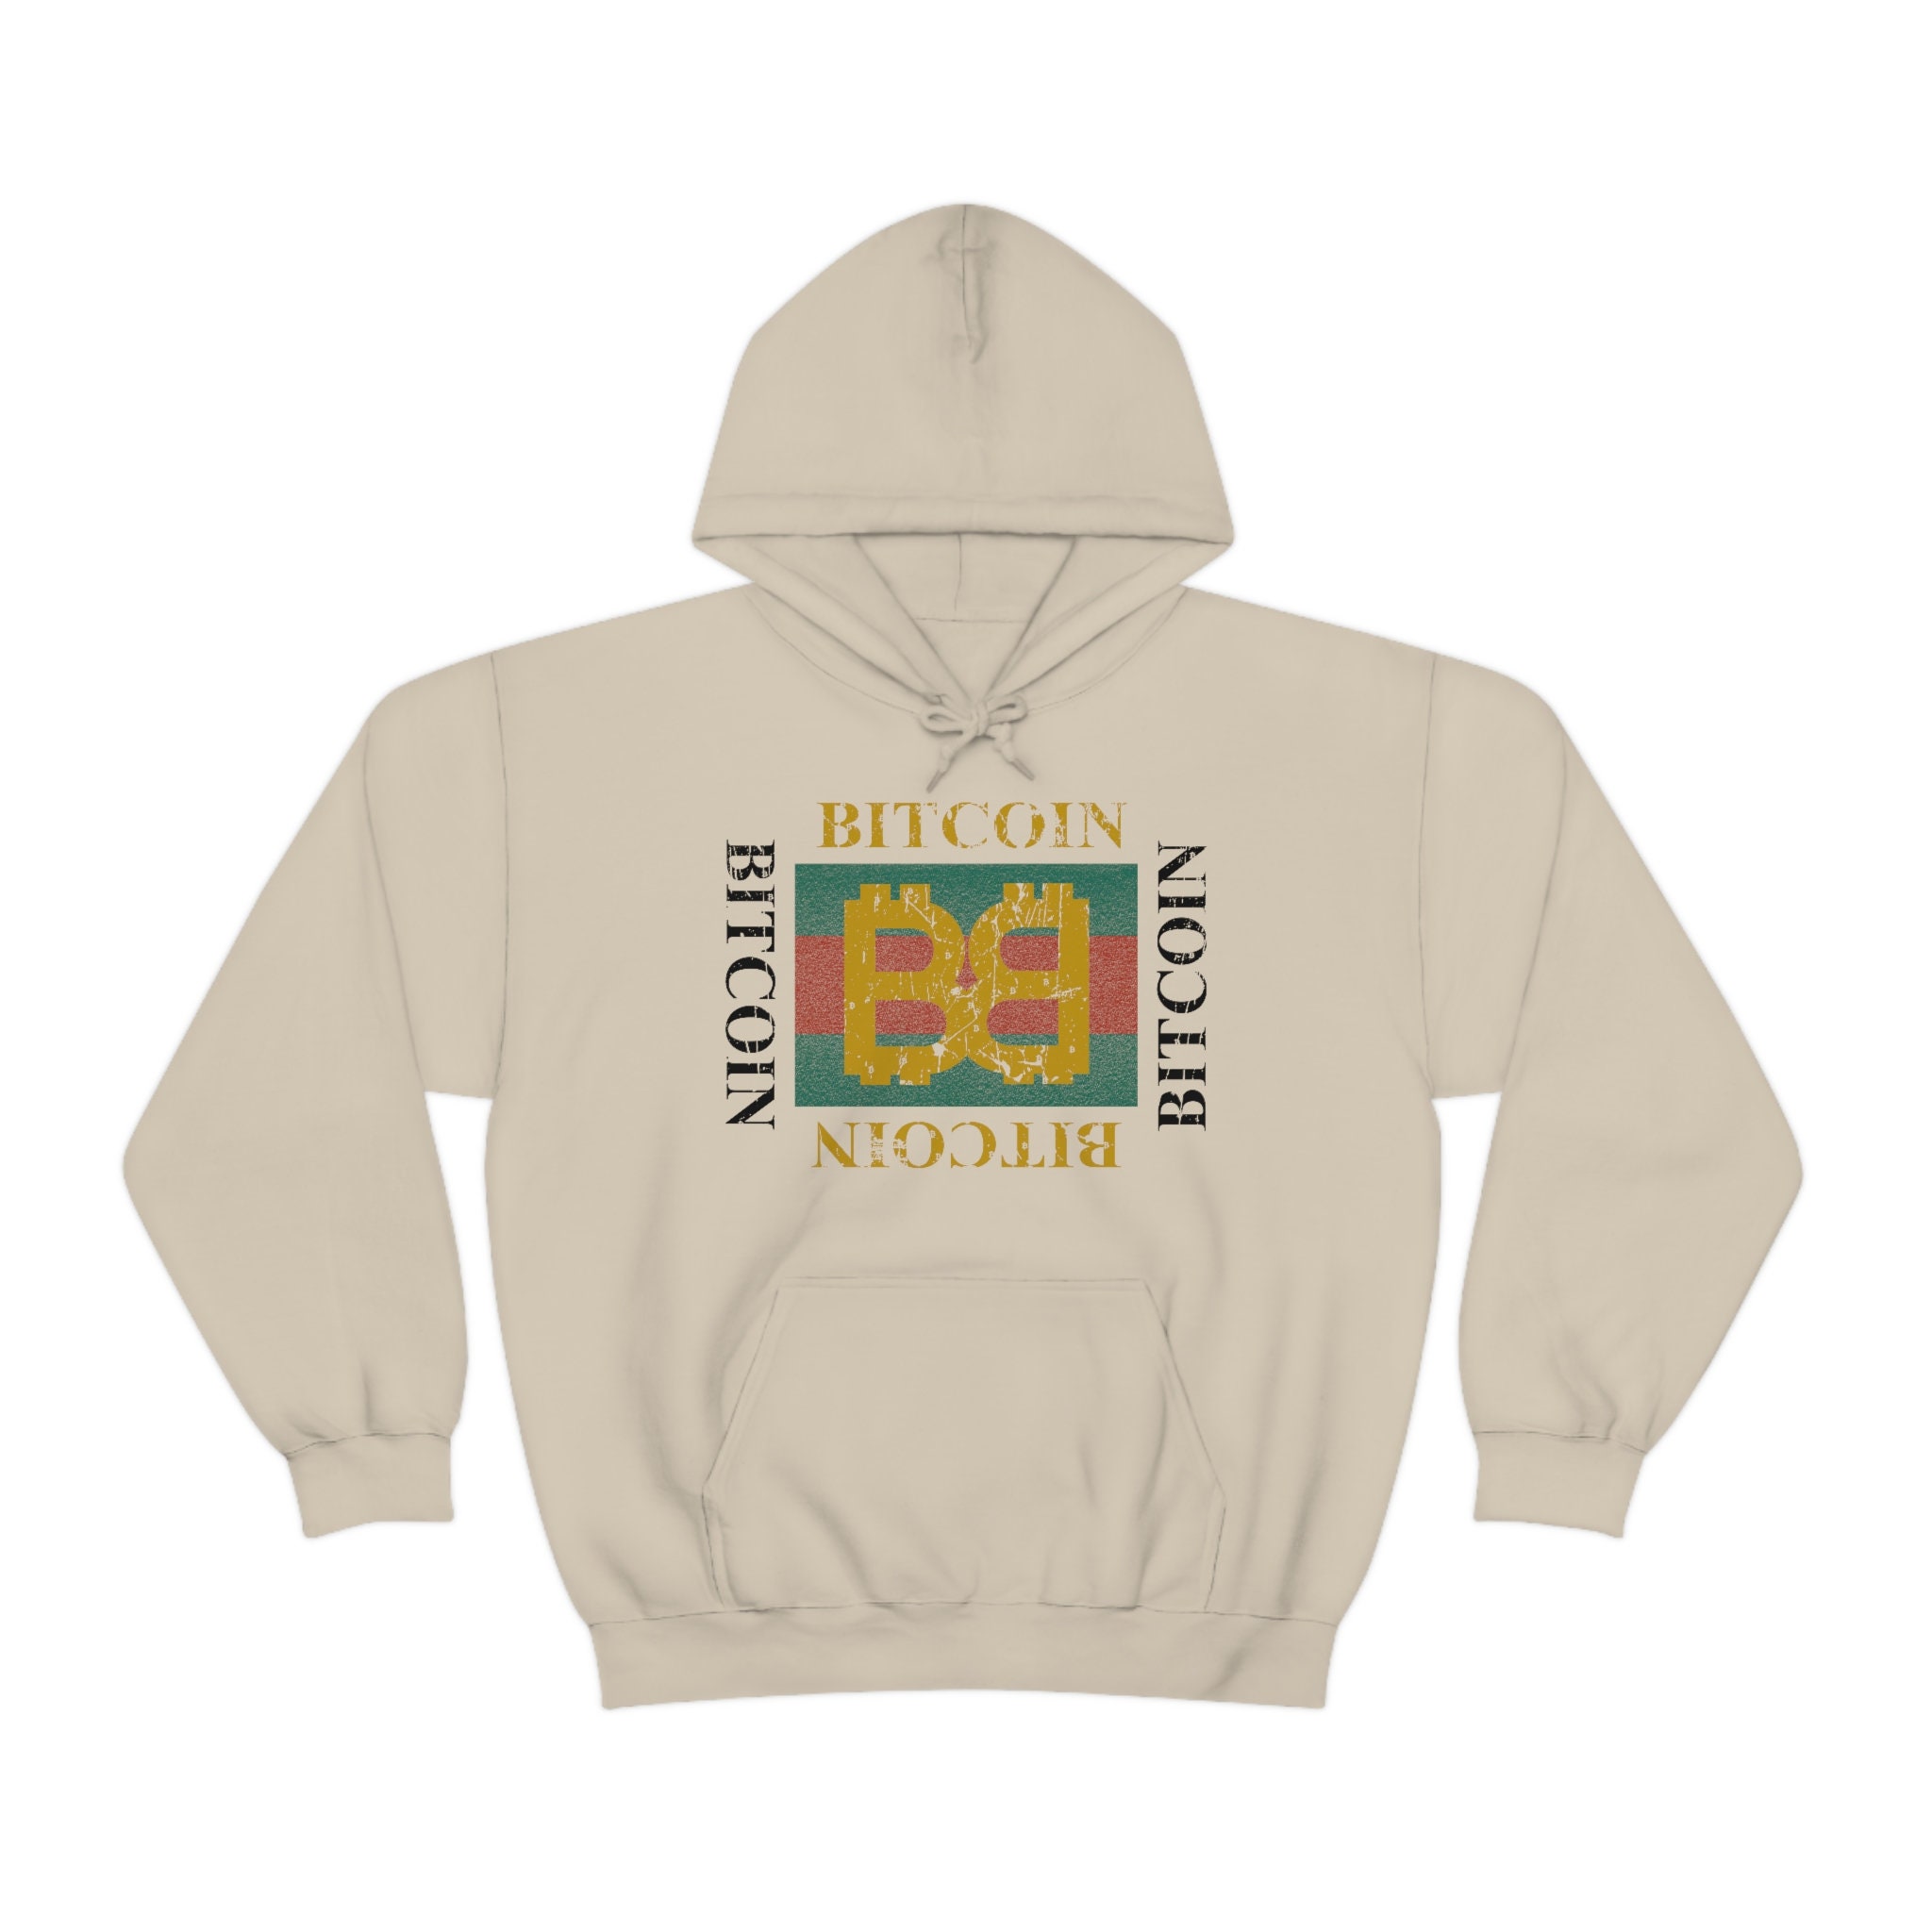 HOODIE  Gucci hoodie, Hoodies, Athletic jacket